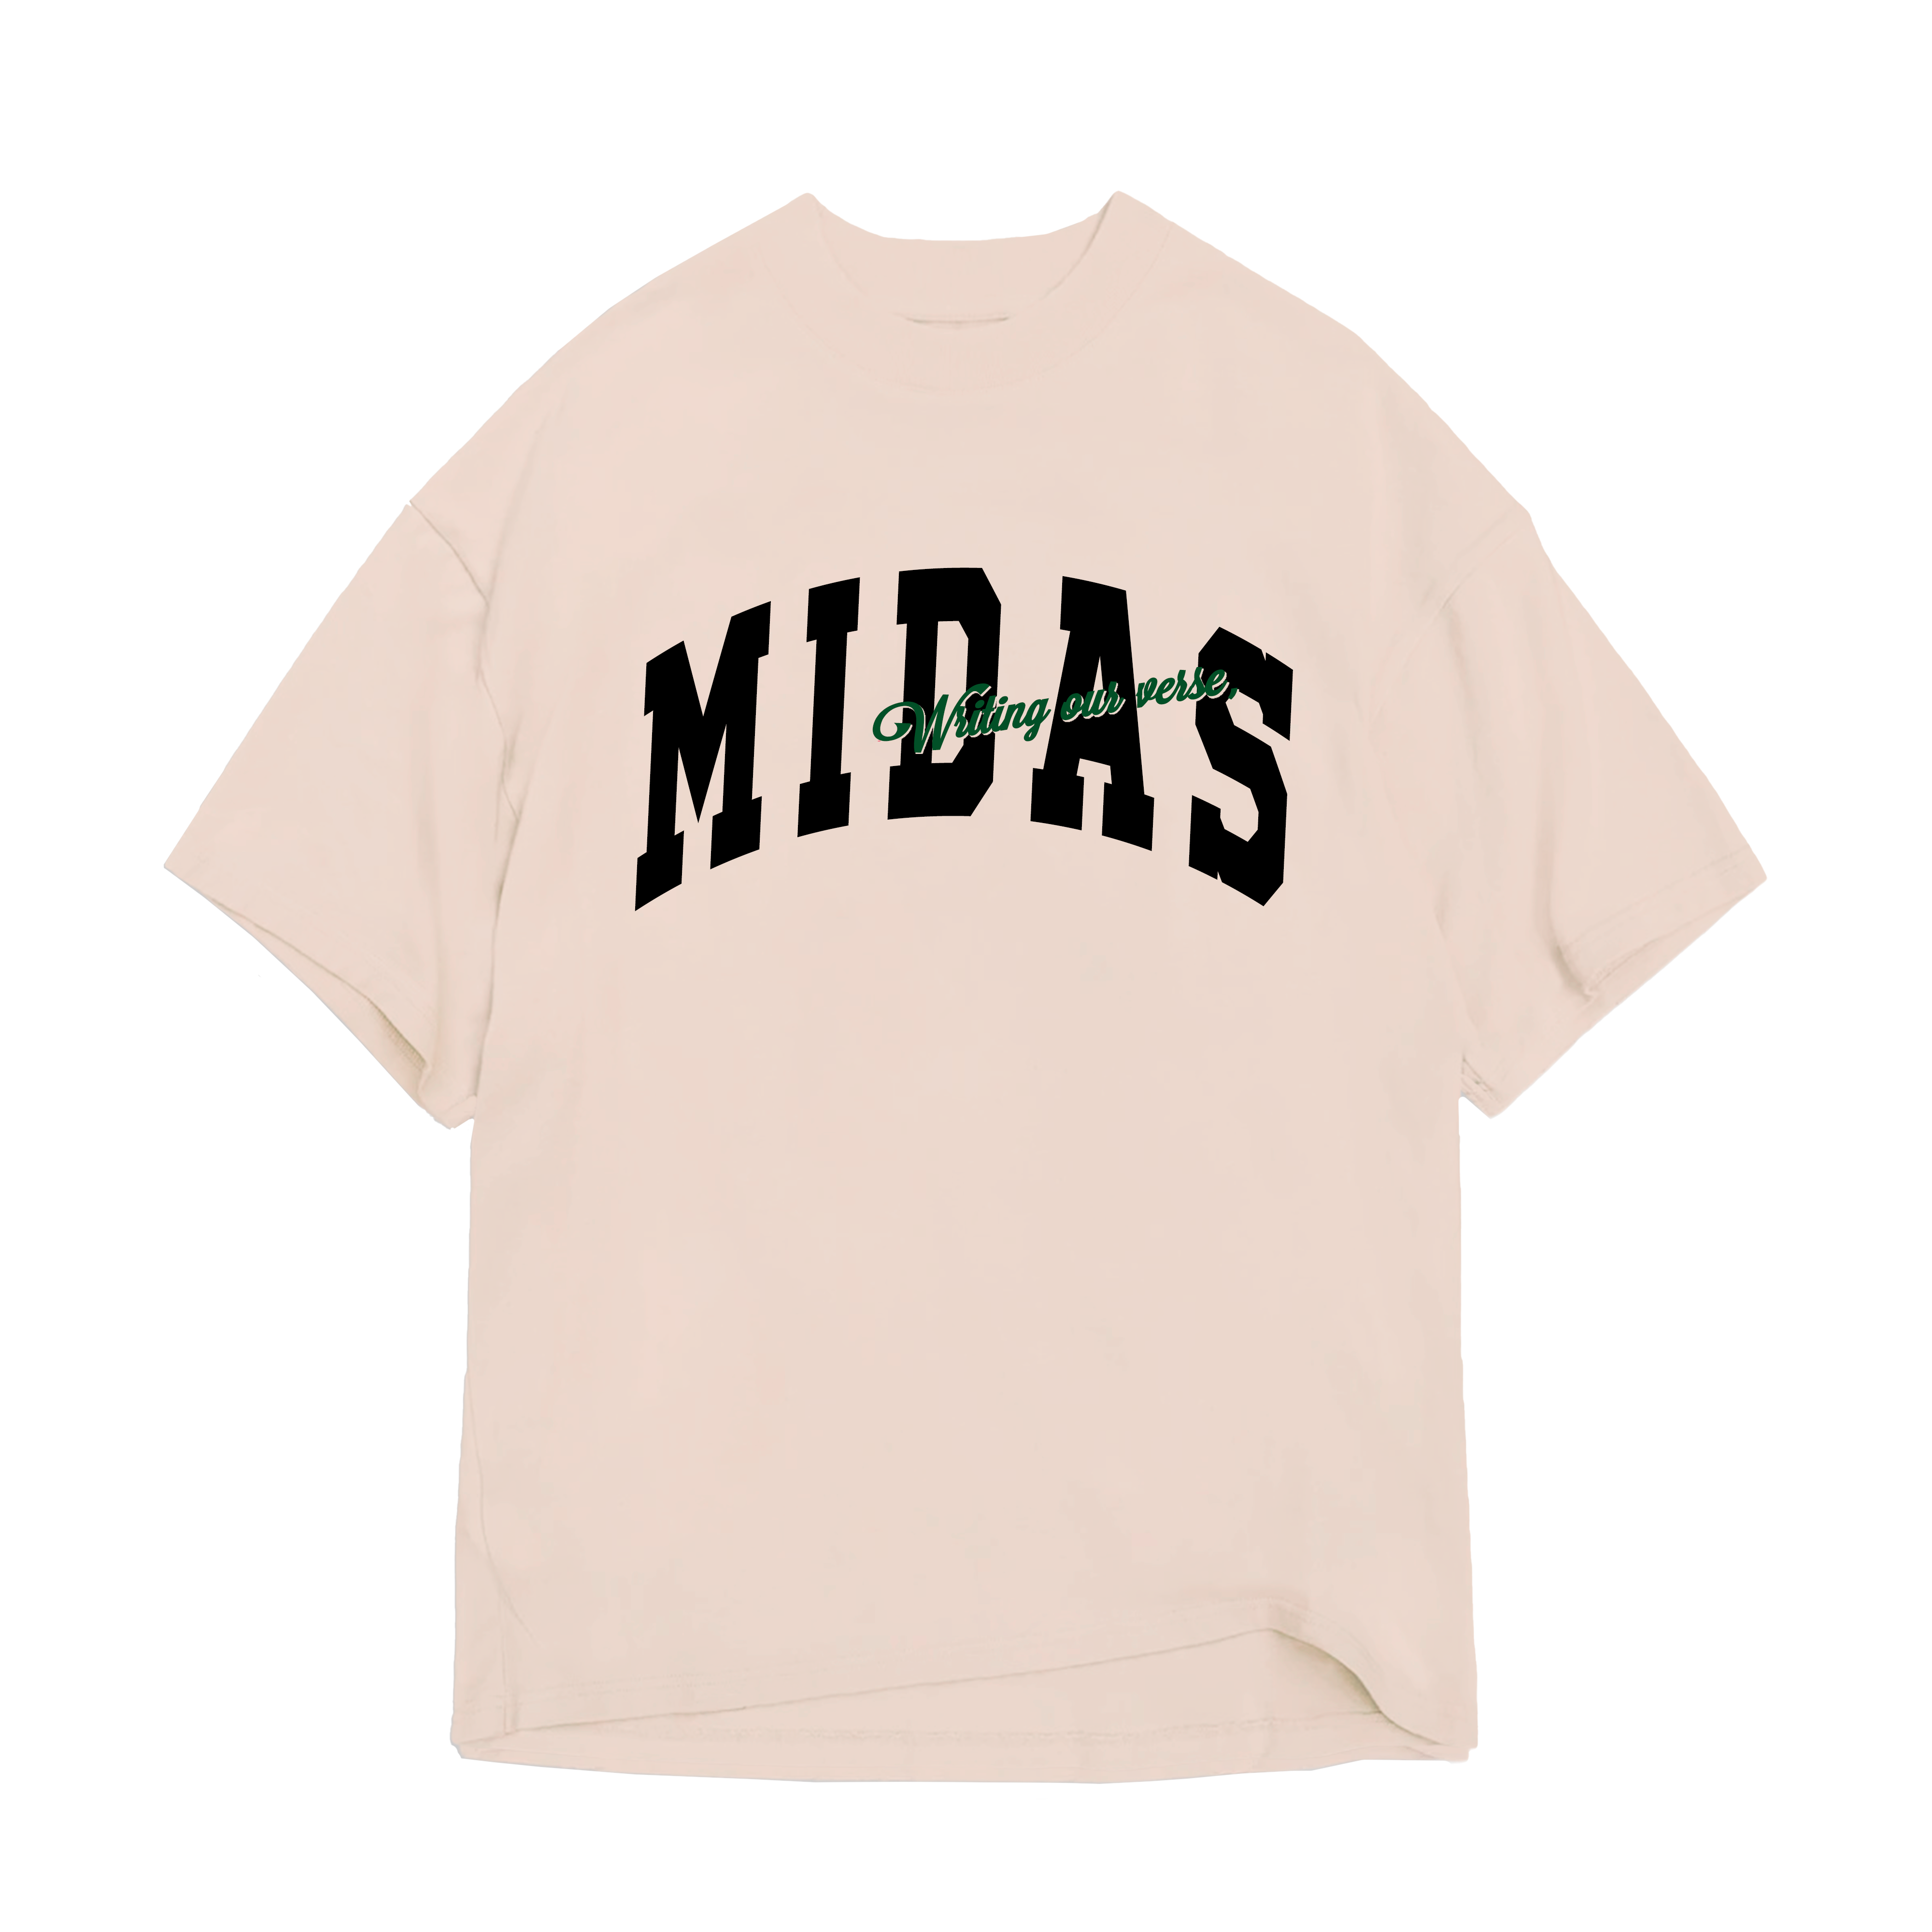 MIDAS - Camiseta University Off-White